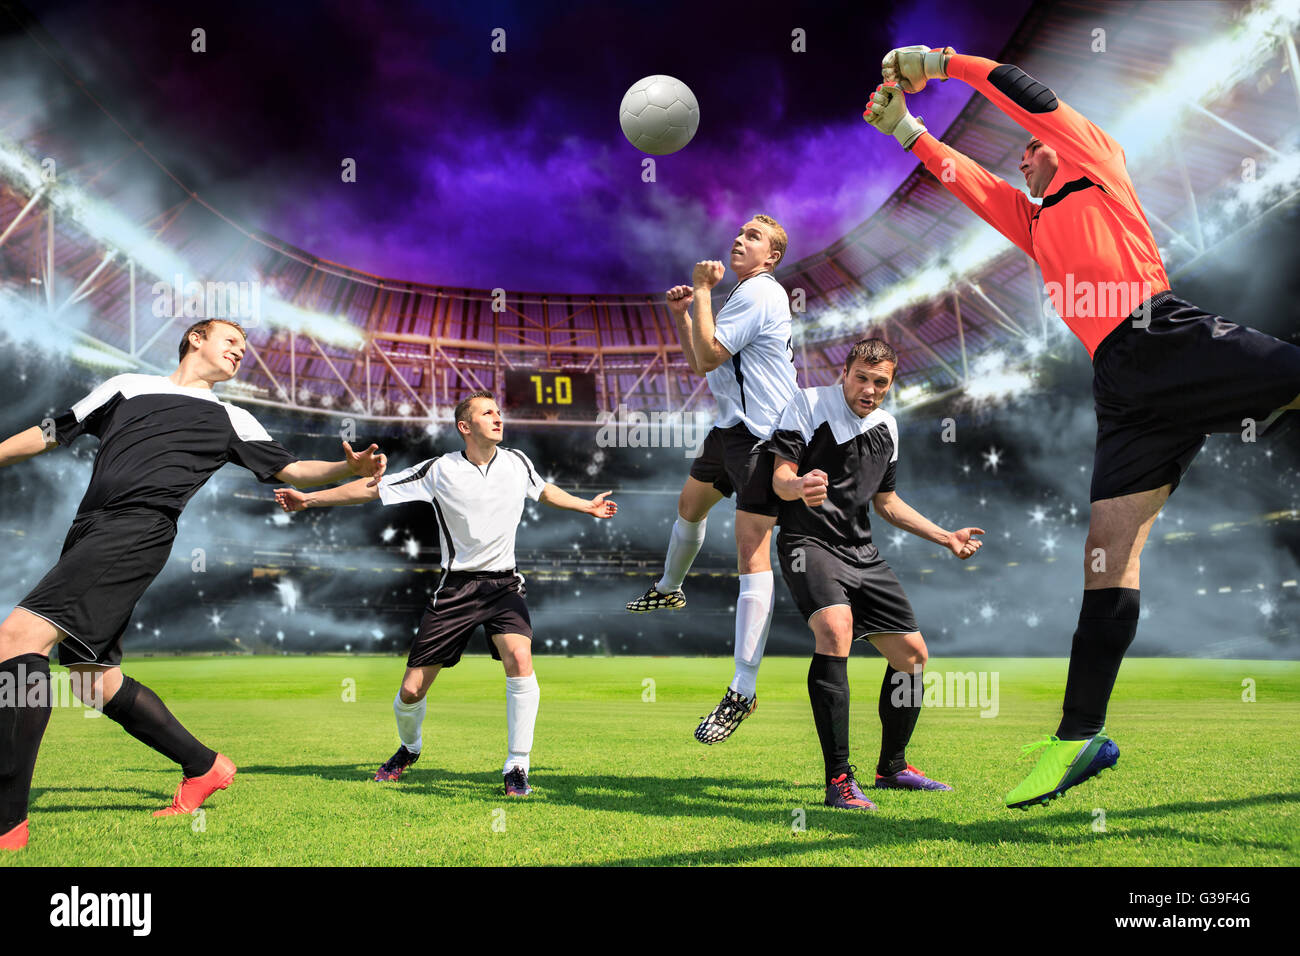 Escenas de un partido de fútbol o soccer con reproductor masculino Foto de stock